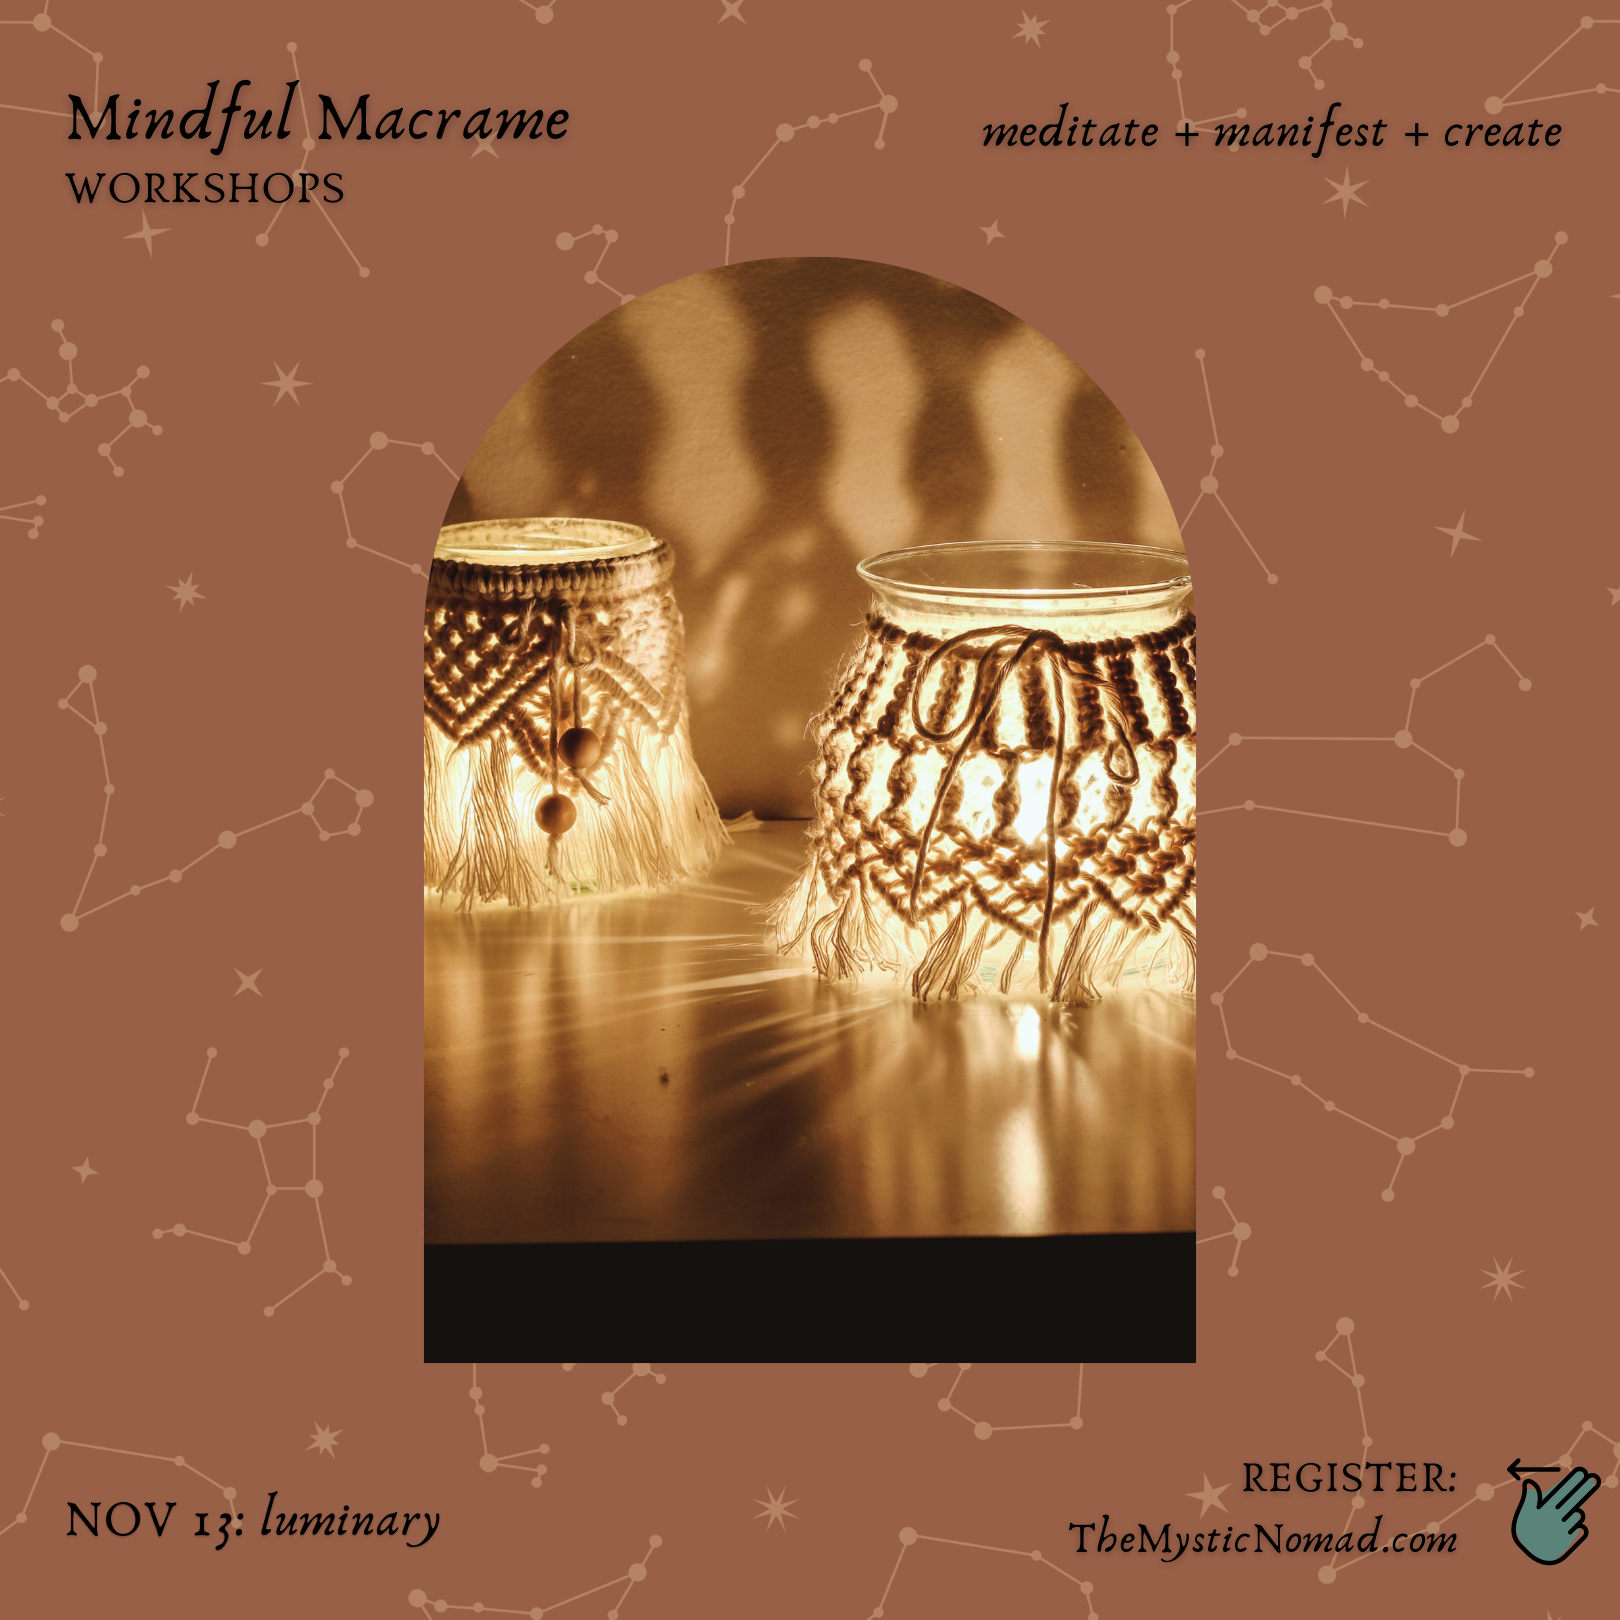 Mindful Macrame 2 Workshop - November